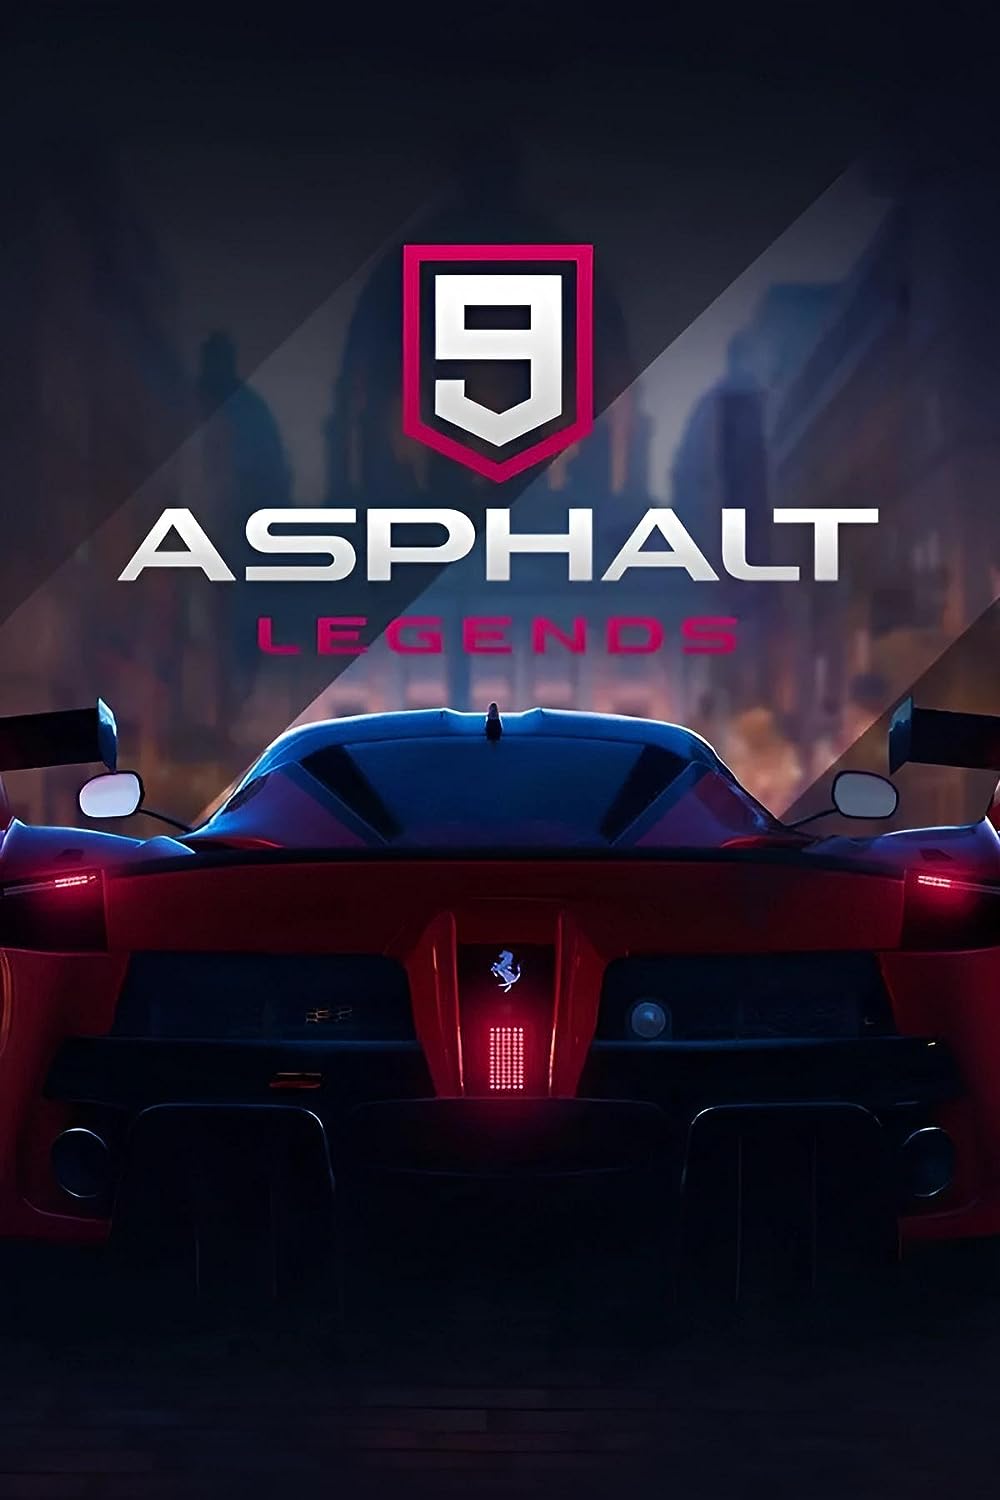 Asphalt 9: Legends Multiplayer Android Games